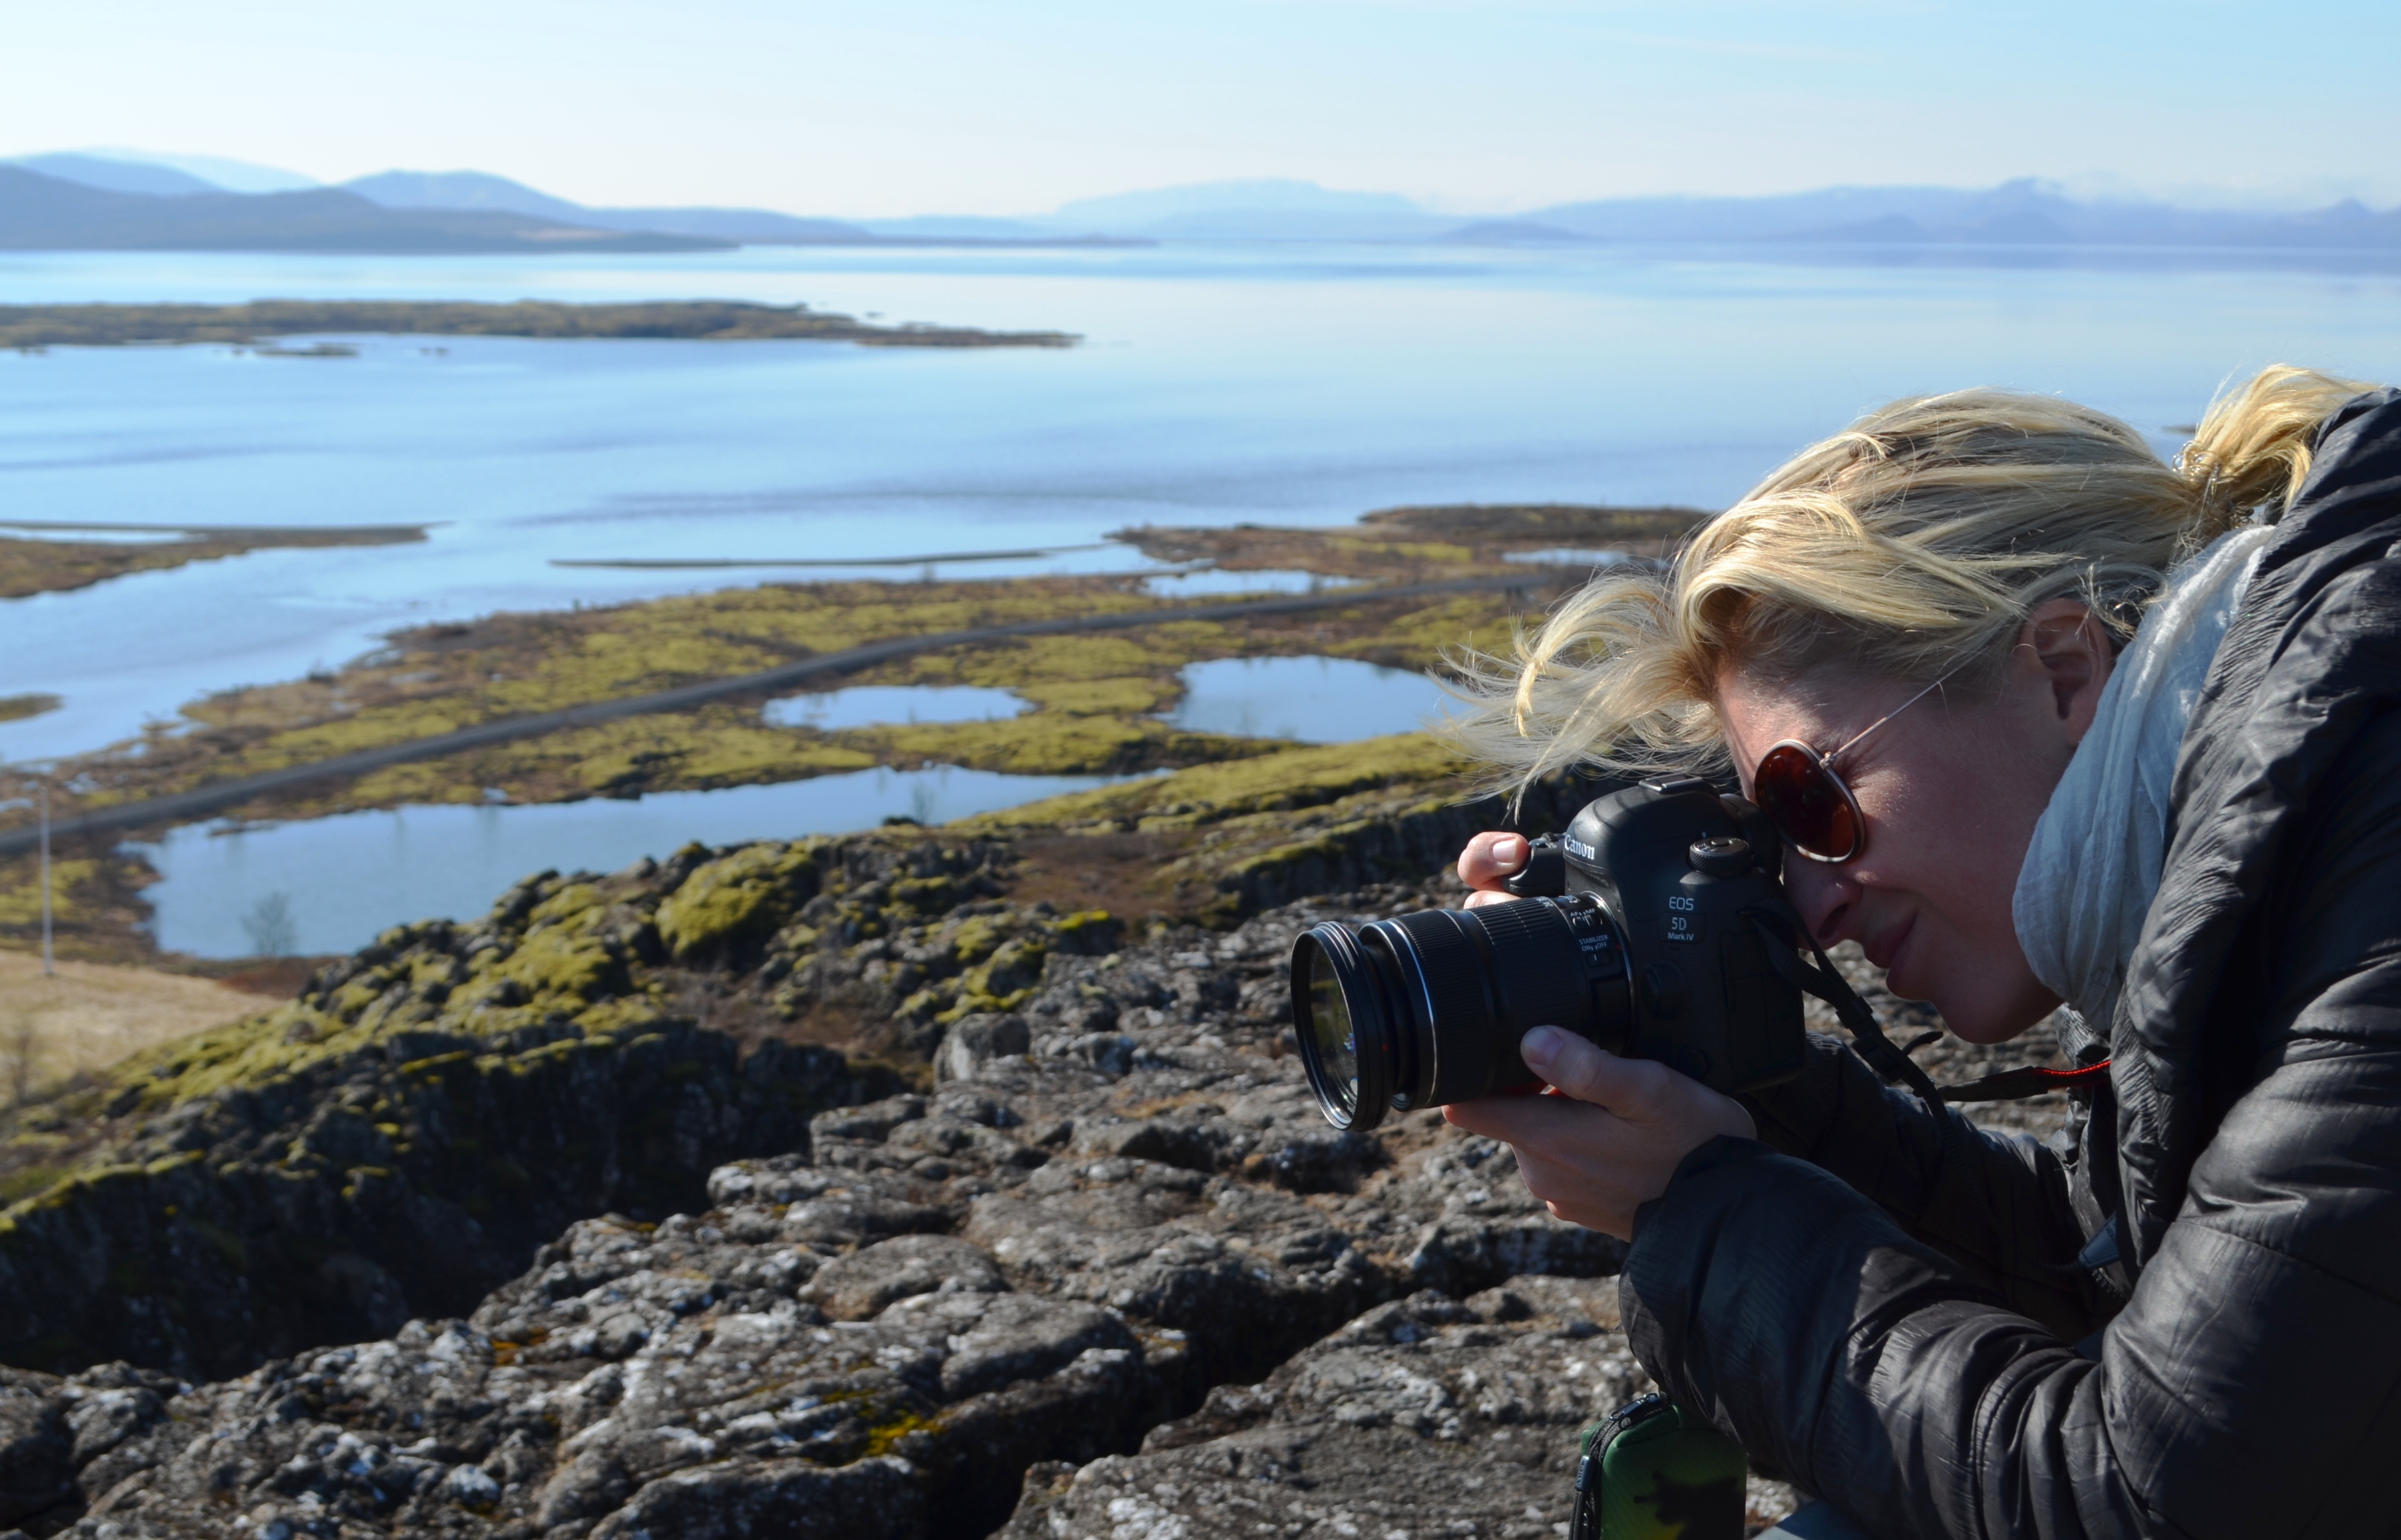 Journalistin fotografiert die Landschaft in Island